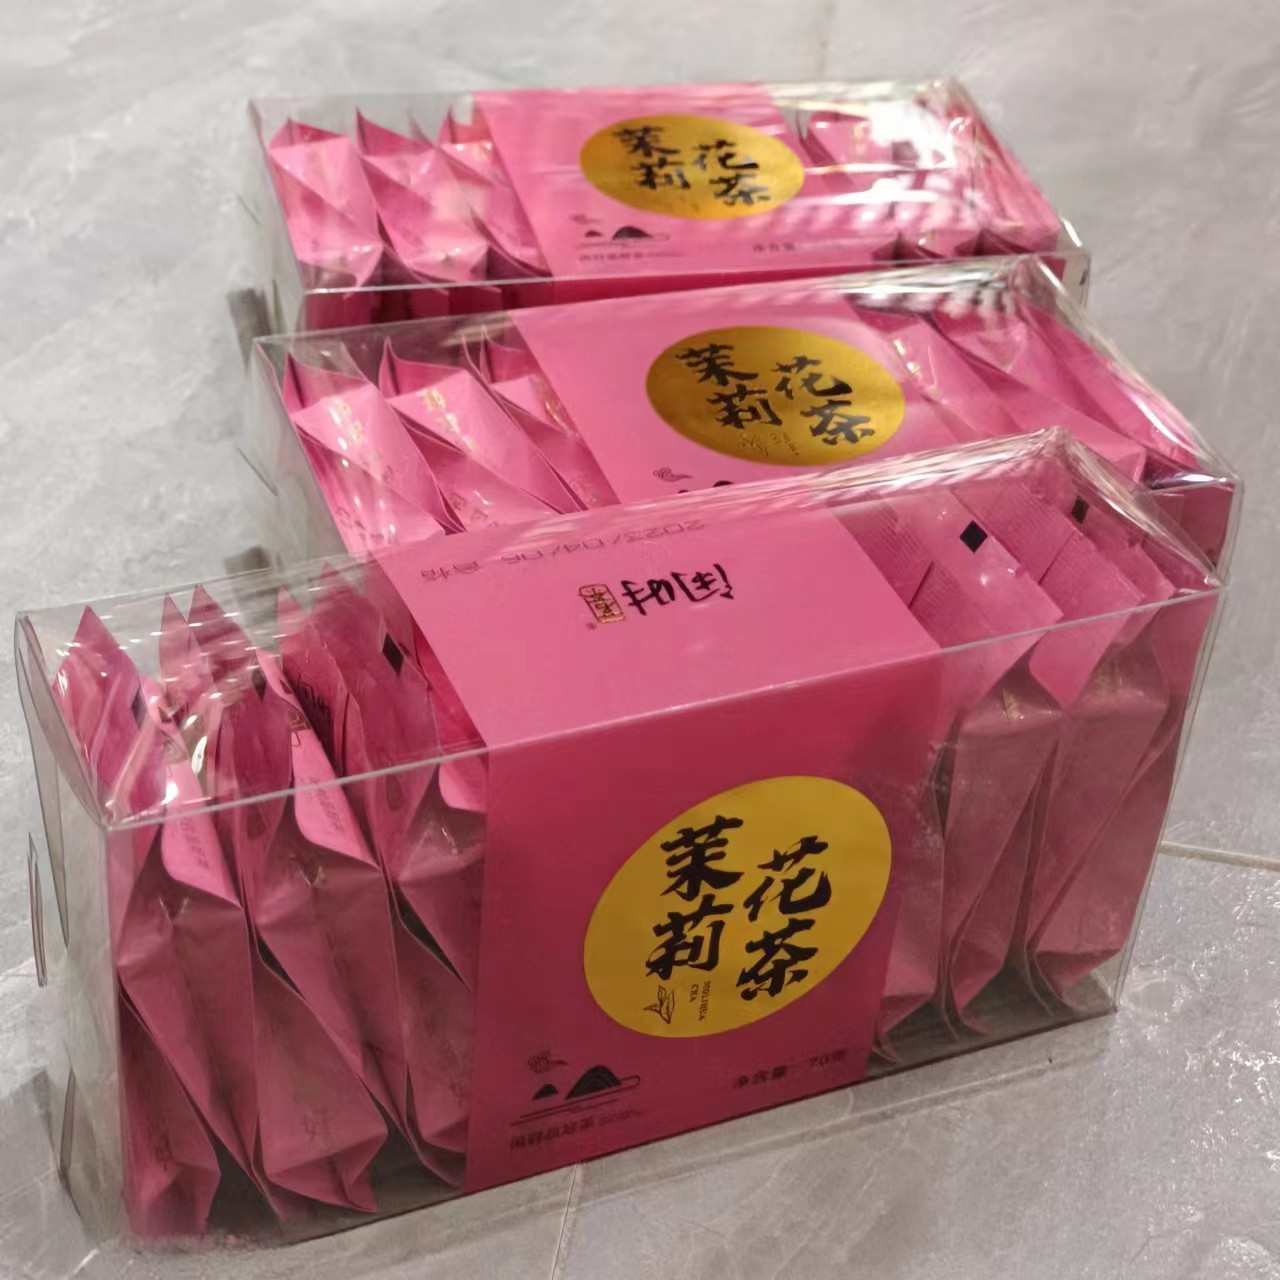 【今日新品】闲时茉莉花茶 新鲜茶叶养生茶独立包装 70克礼盒